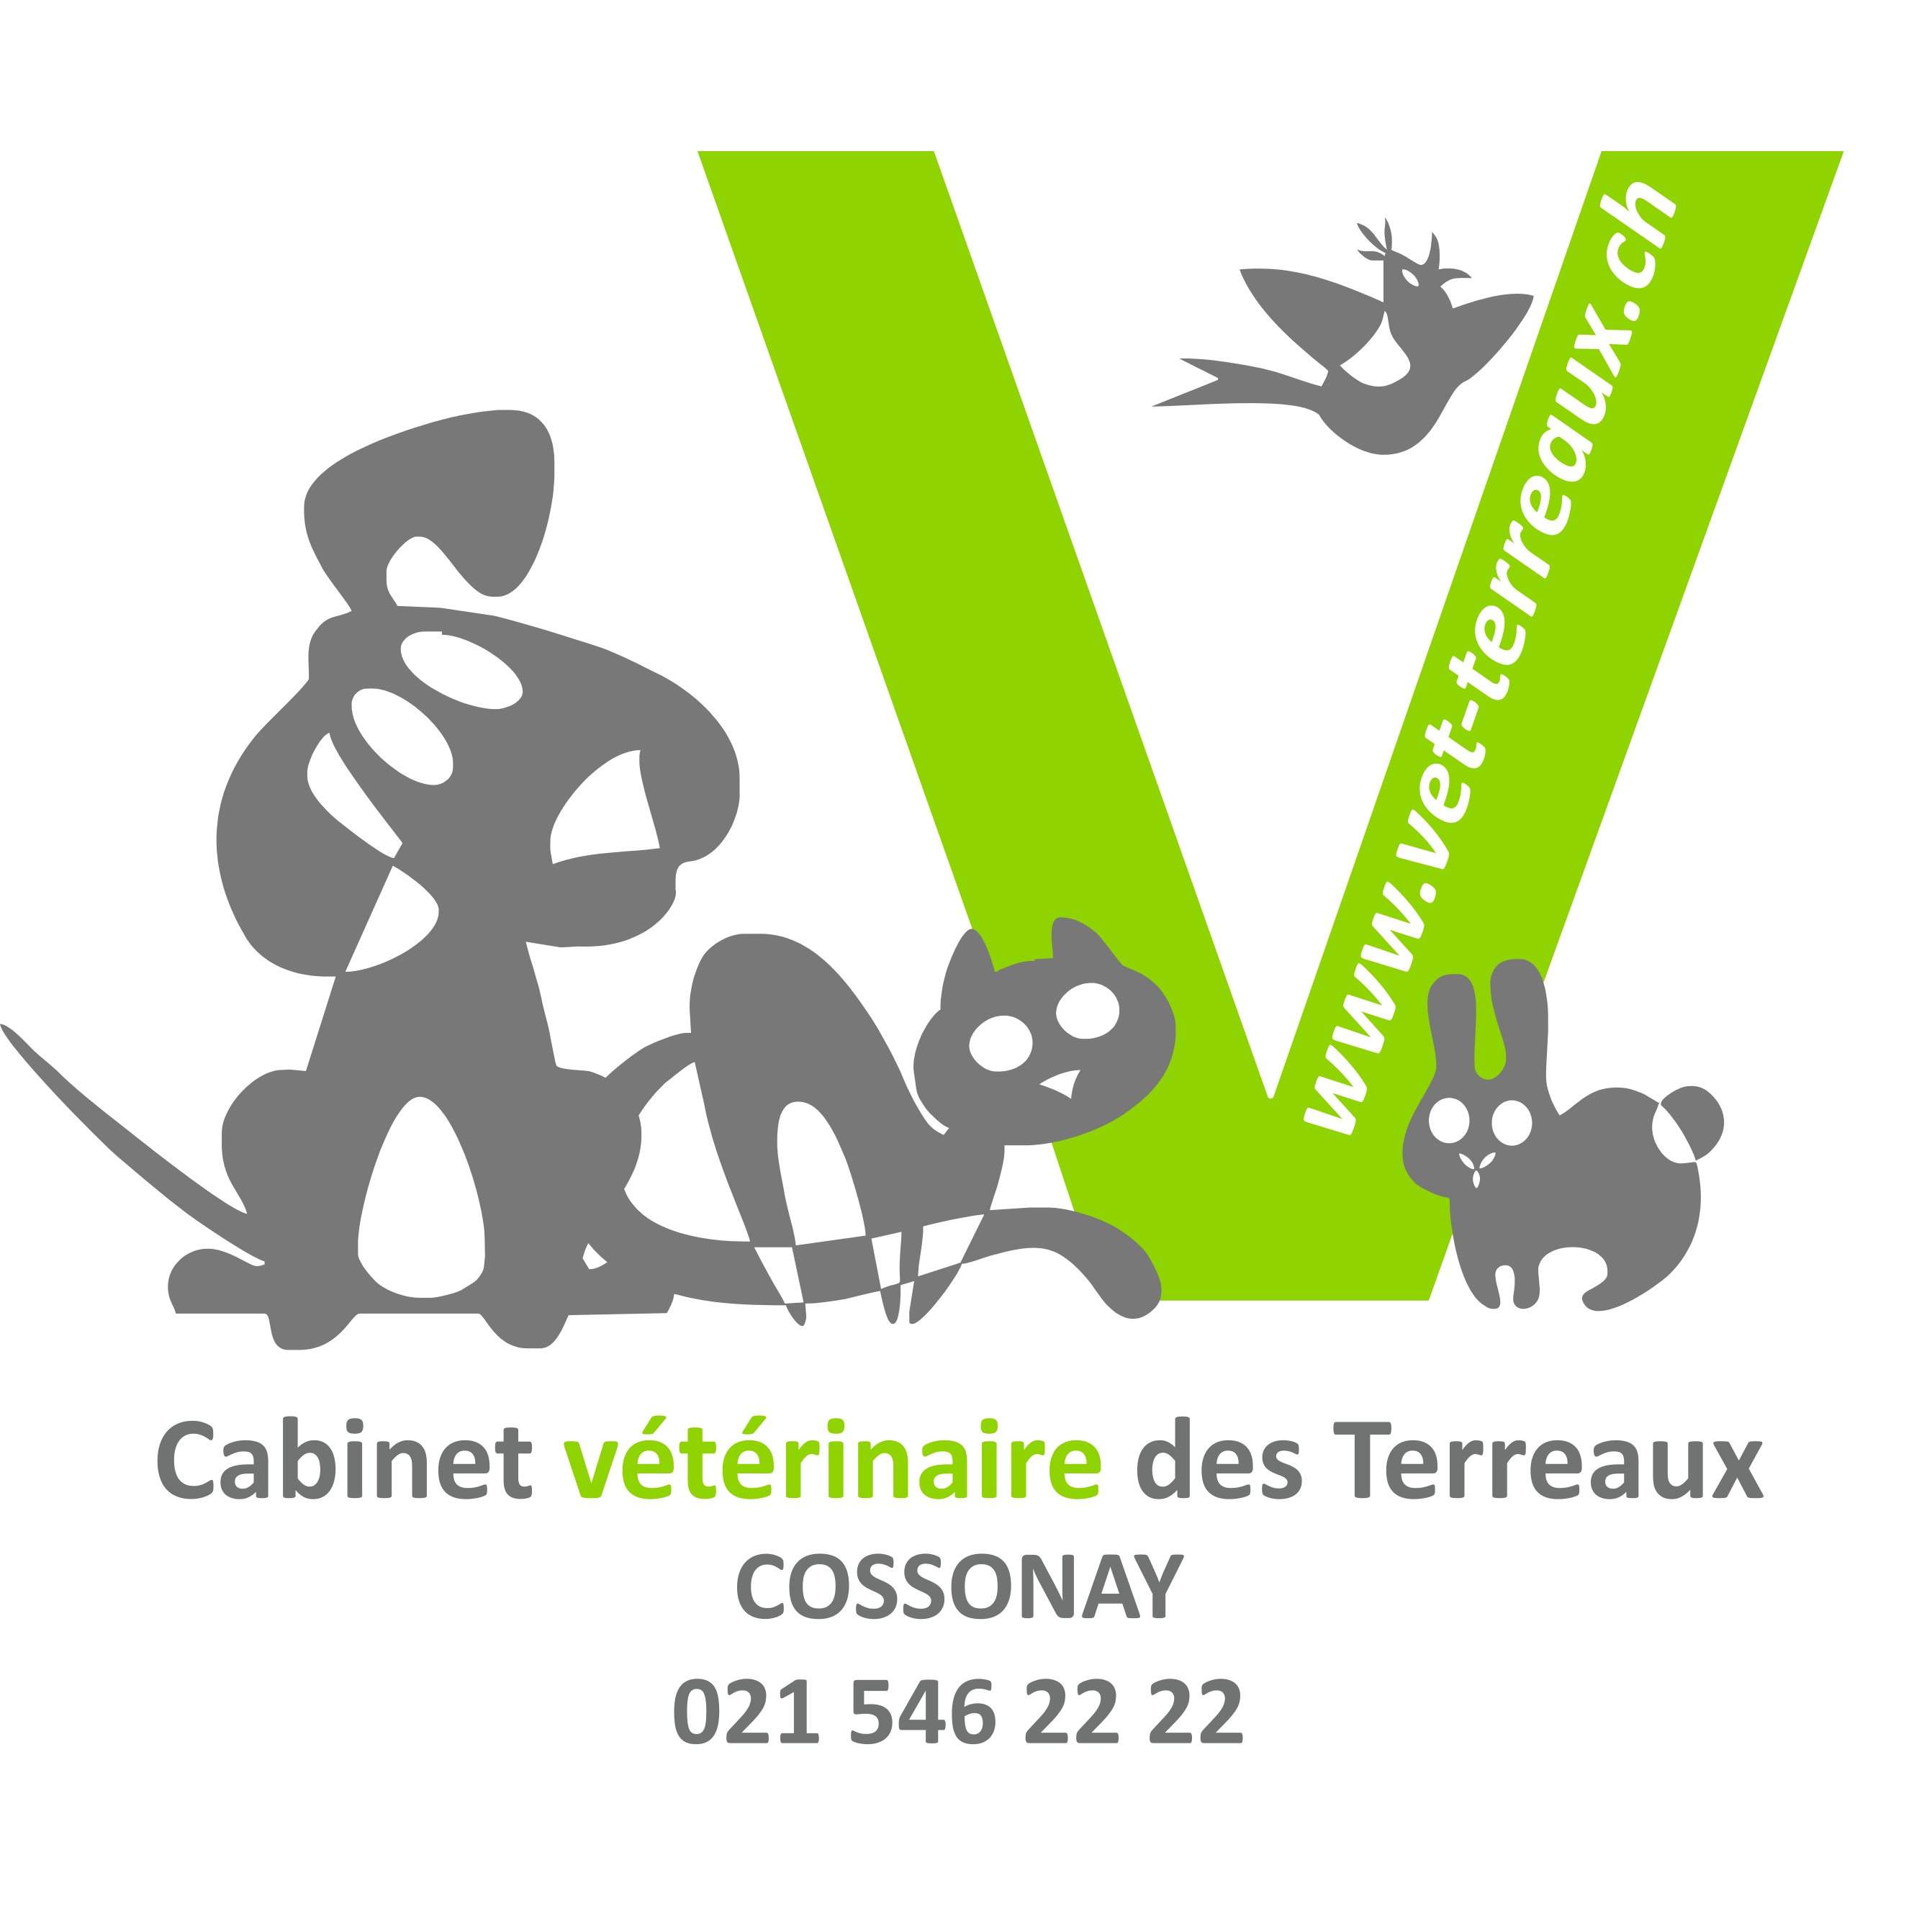 Cabinet vétérinaire des Terreaux Logo